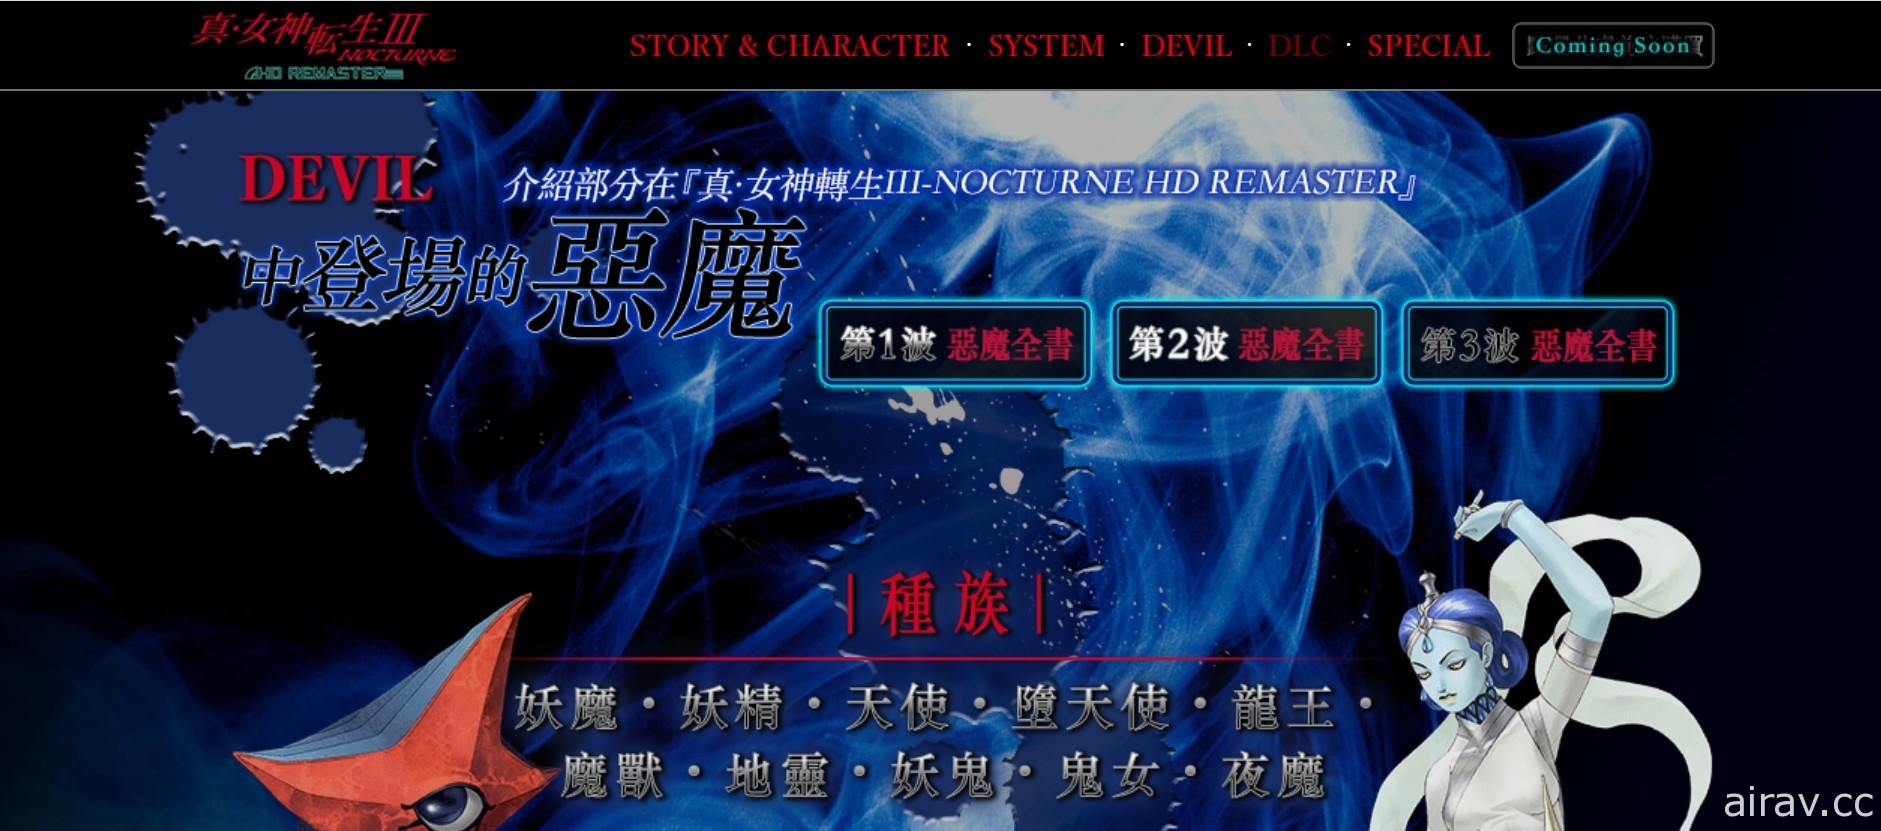 《真‧女神转生 III Nocturne HD Remaster》“恶魔全书 PV”将连续 3 天依序公开